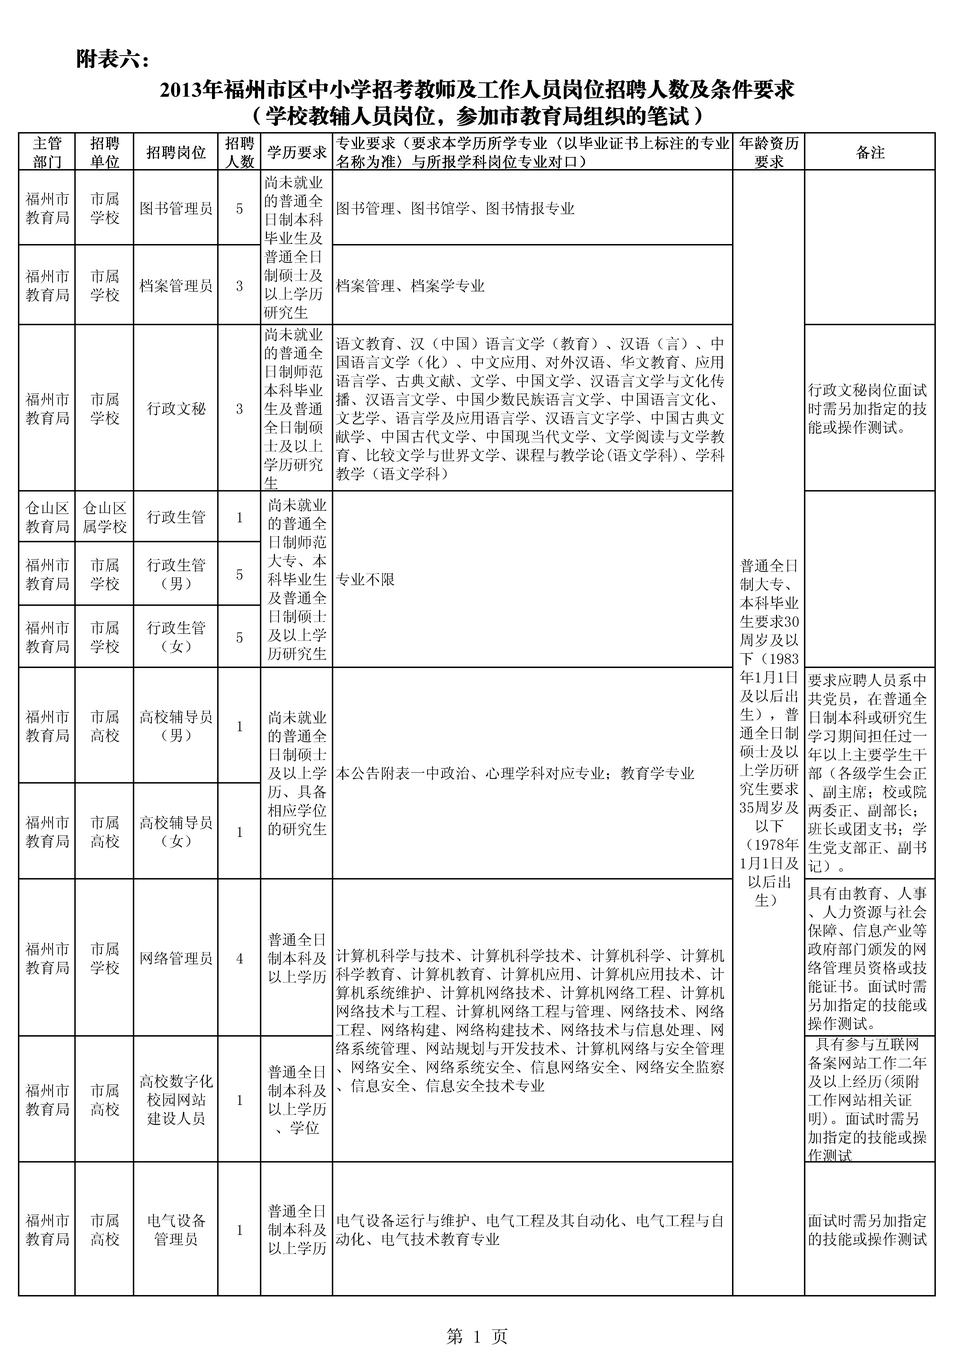 2013年福建省福州市区中小学、幼儿园招考教师及工作人员需求表六1